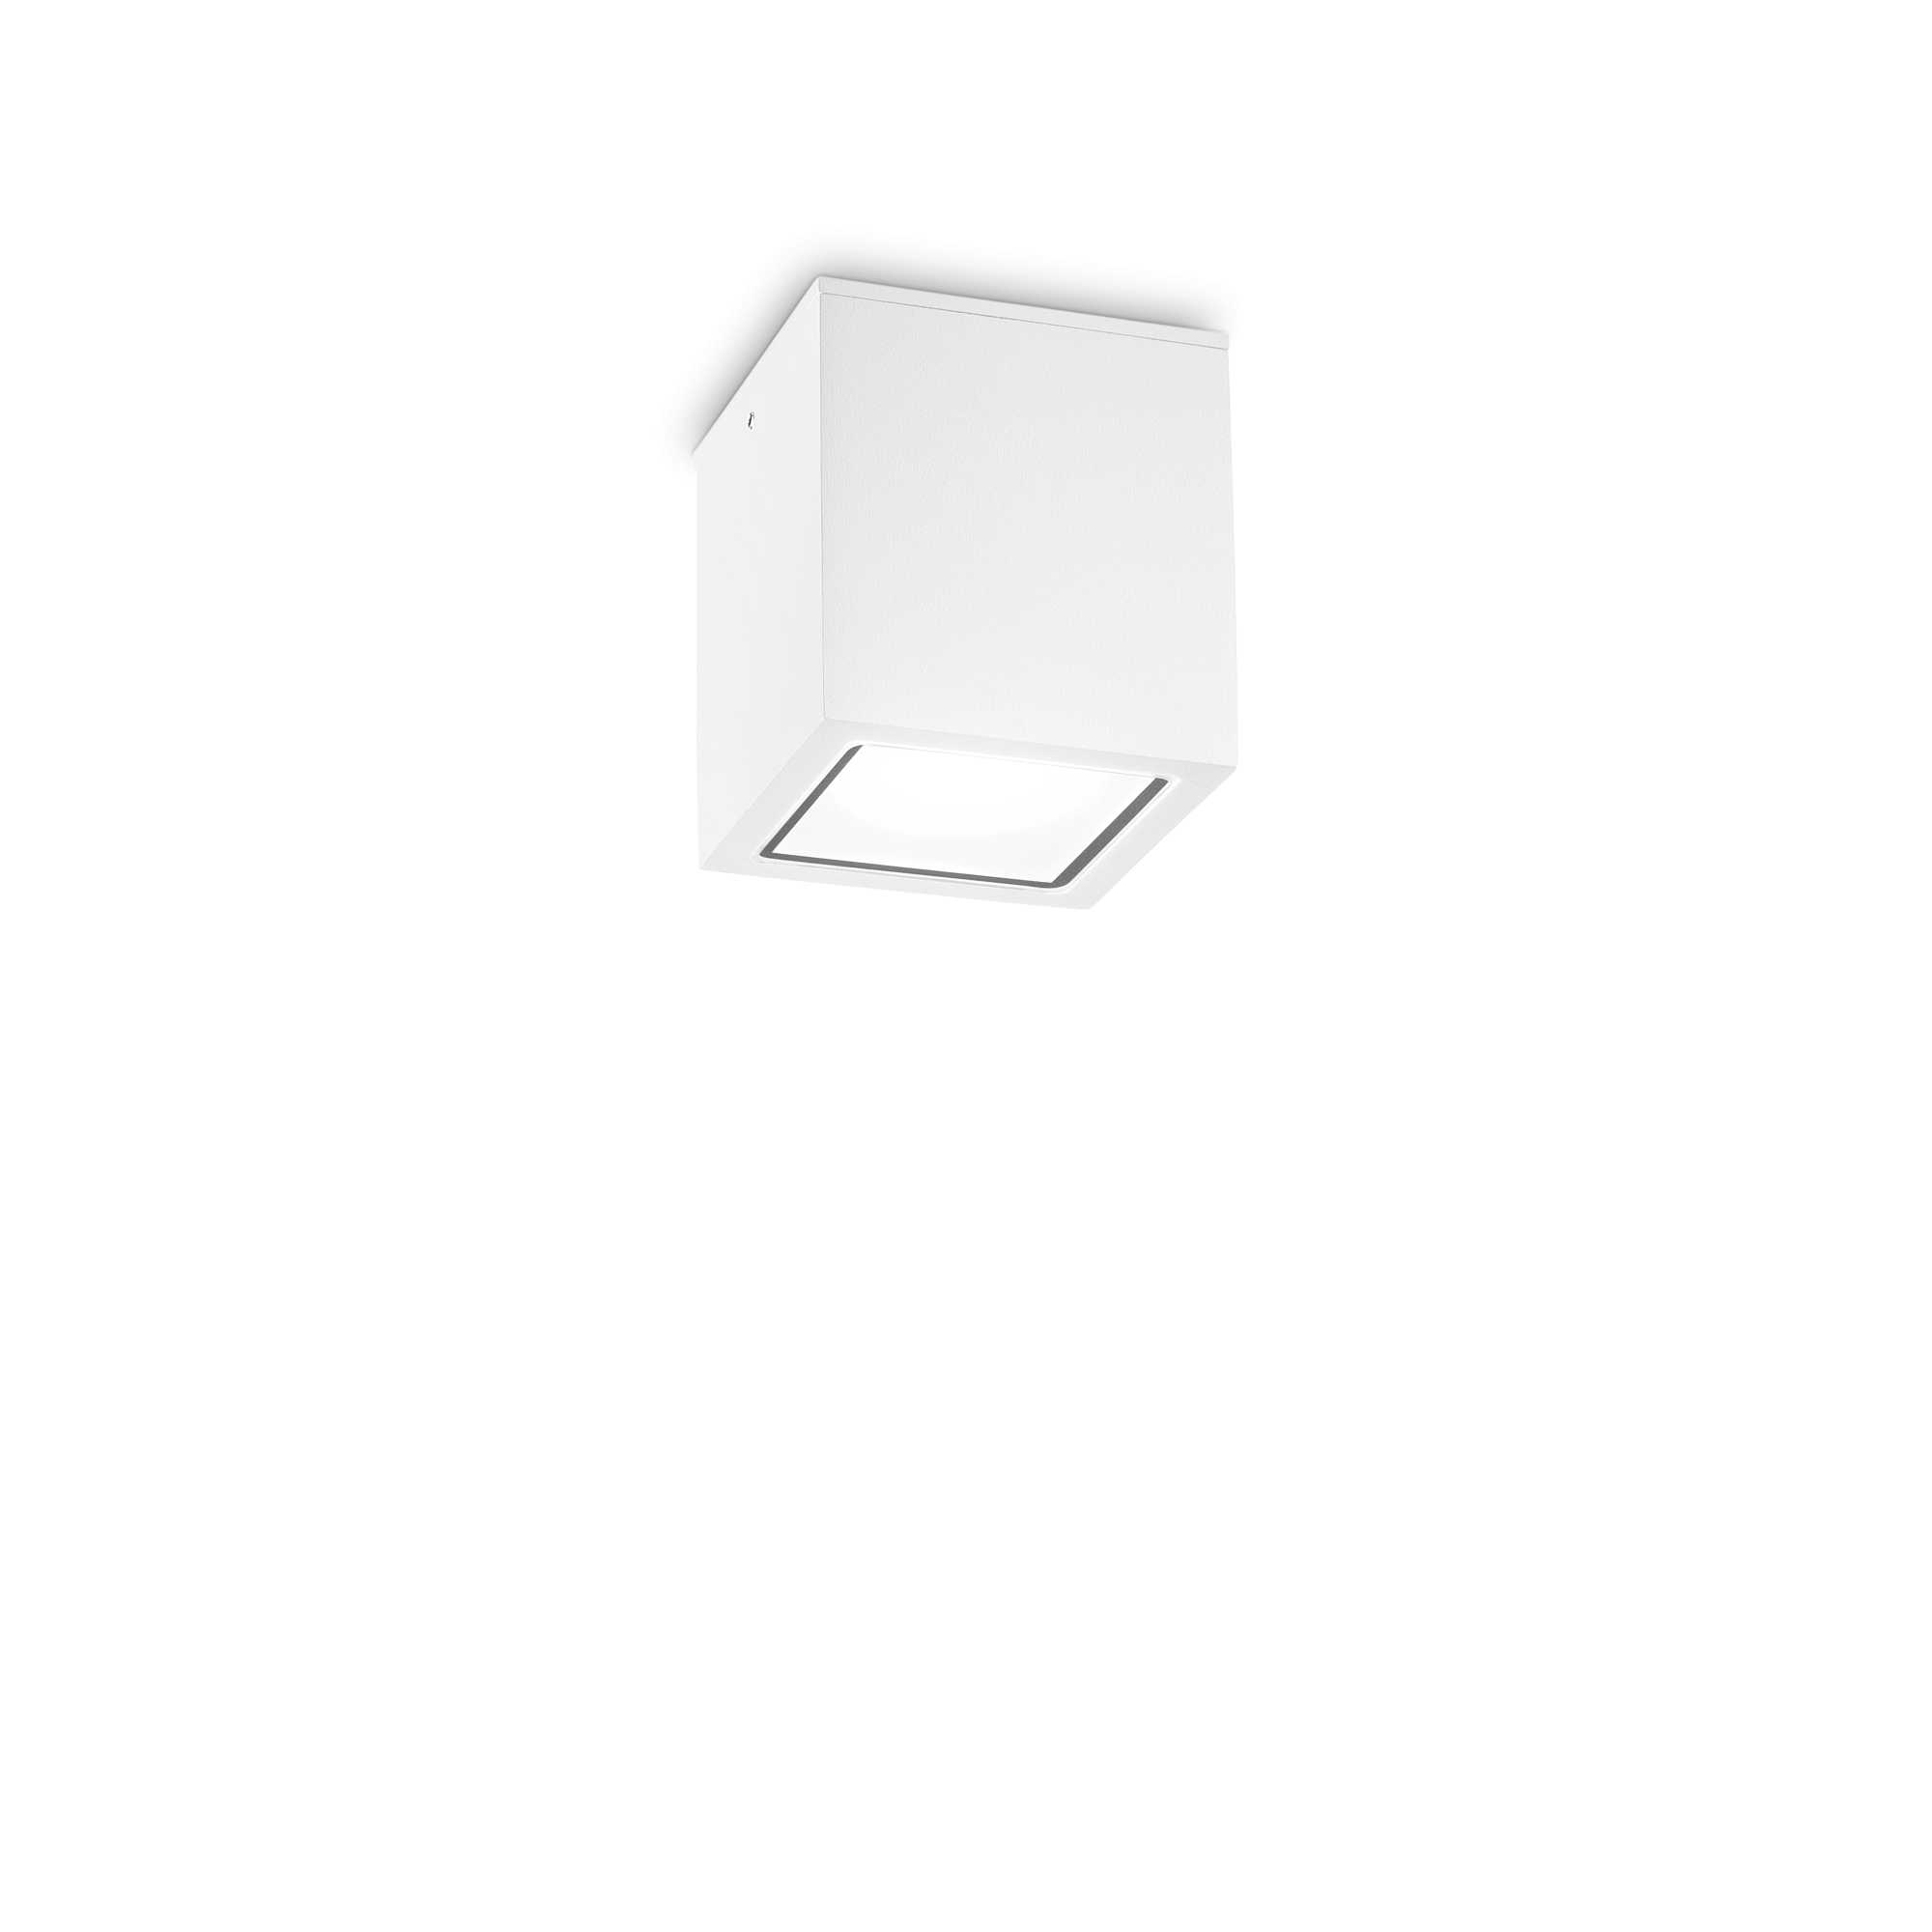 AD hotelska oprema Vanjska stropna lampa Techo pl1 mala- Bijele boje slika proizvoda